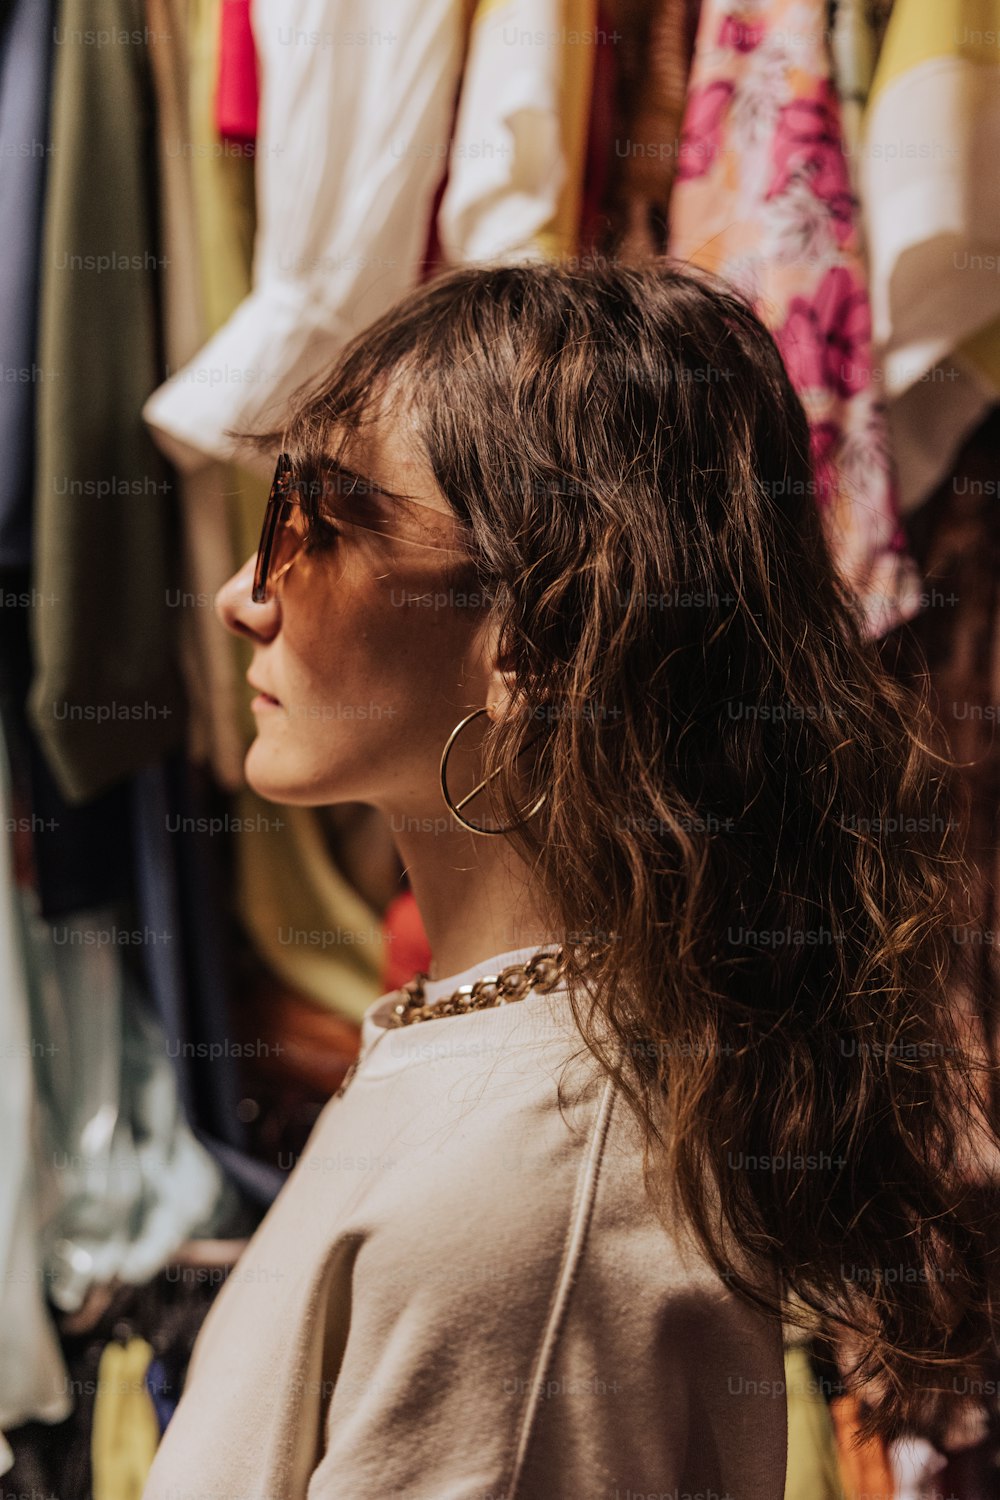 Una mujer parada frente a un estante de ropa